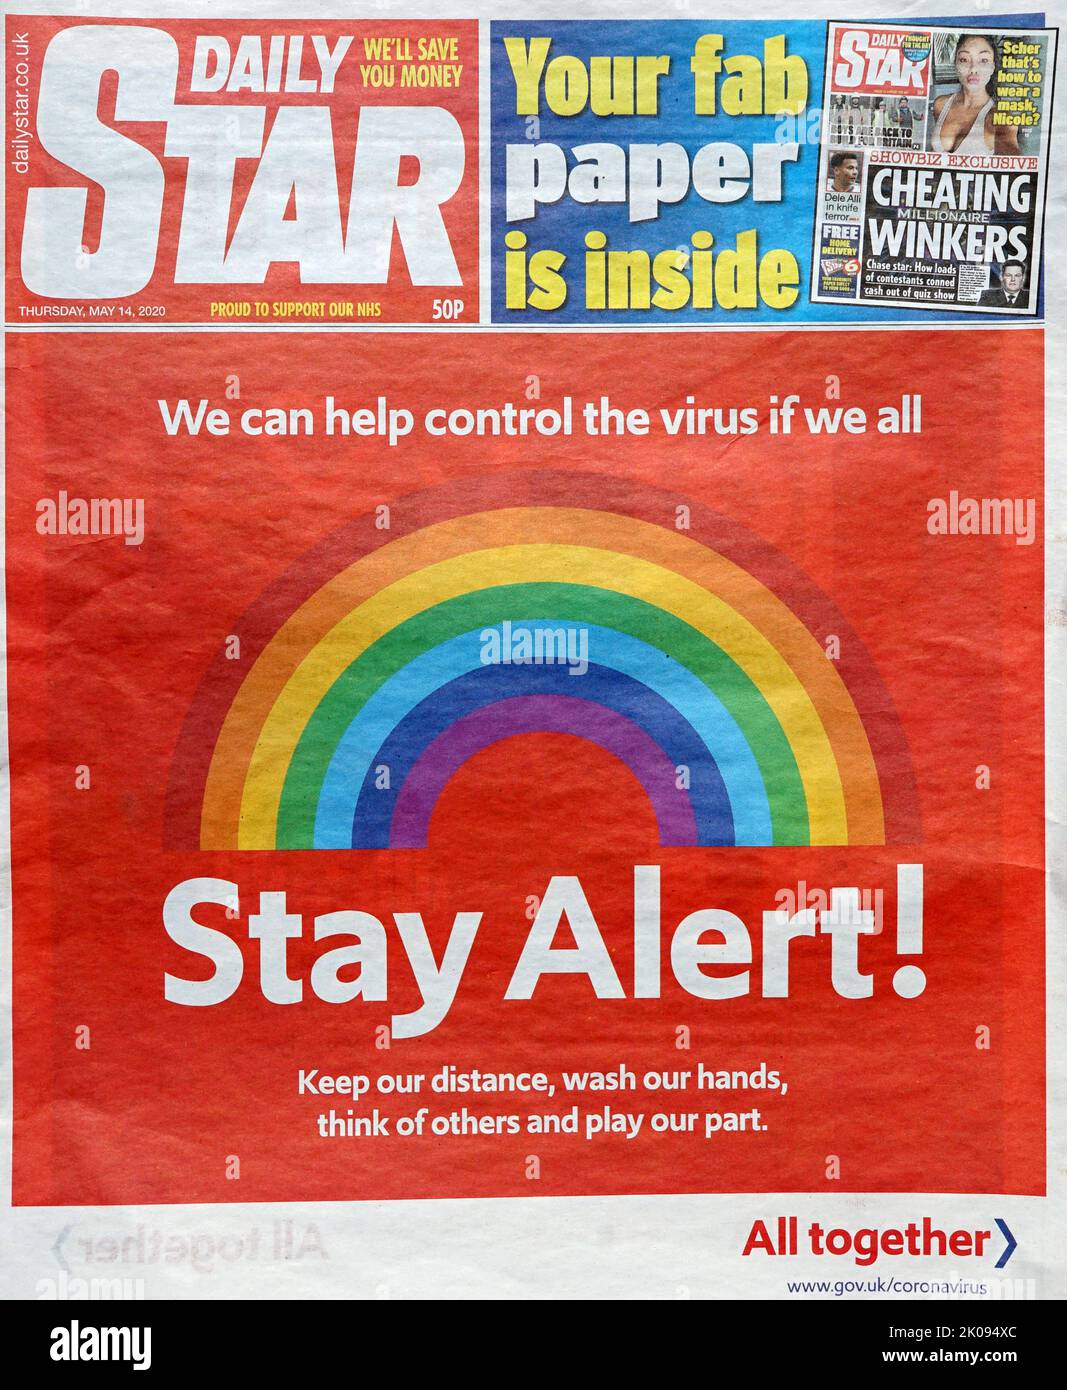 Portada del periódico Star, mayo de 14 2020, con advertencia de la pandemia Covid-19. Foto de stock